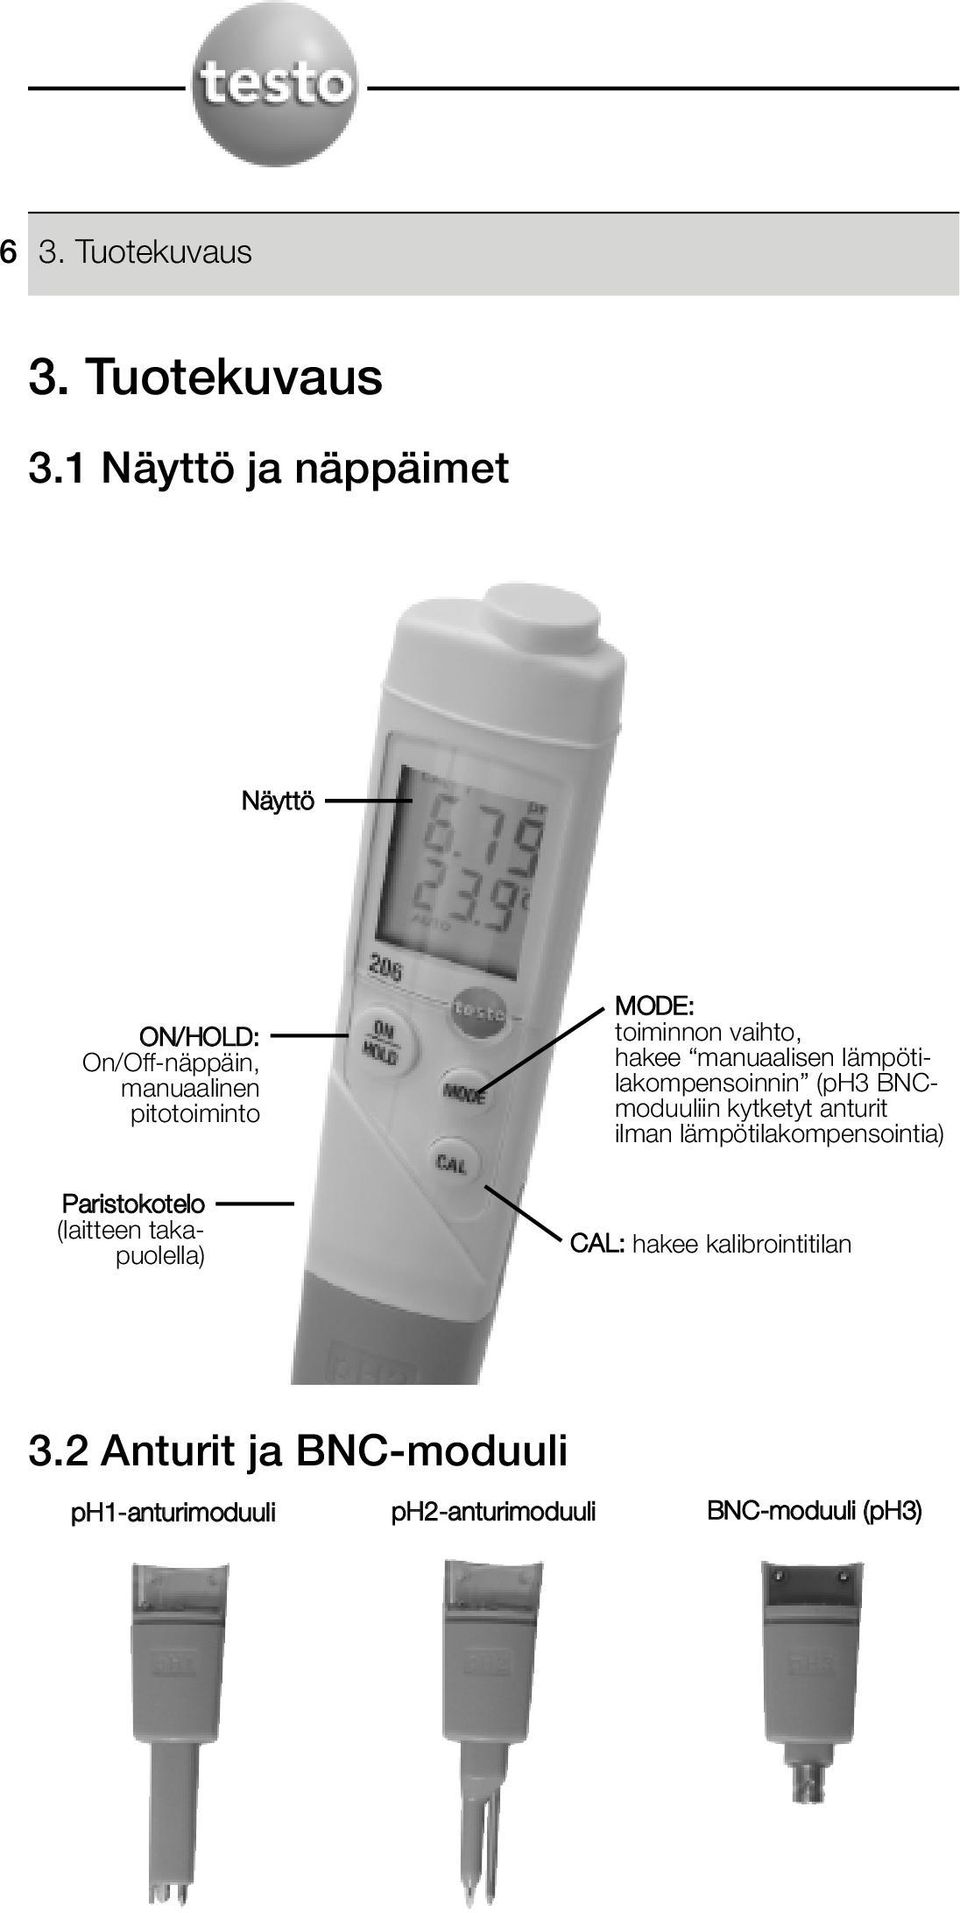 manuaalisen lämpötilakompensoinnin (ph3 BNCmoduuliin kytketyt anturit ilman